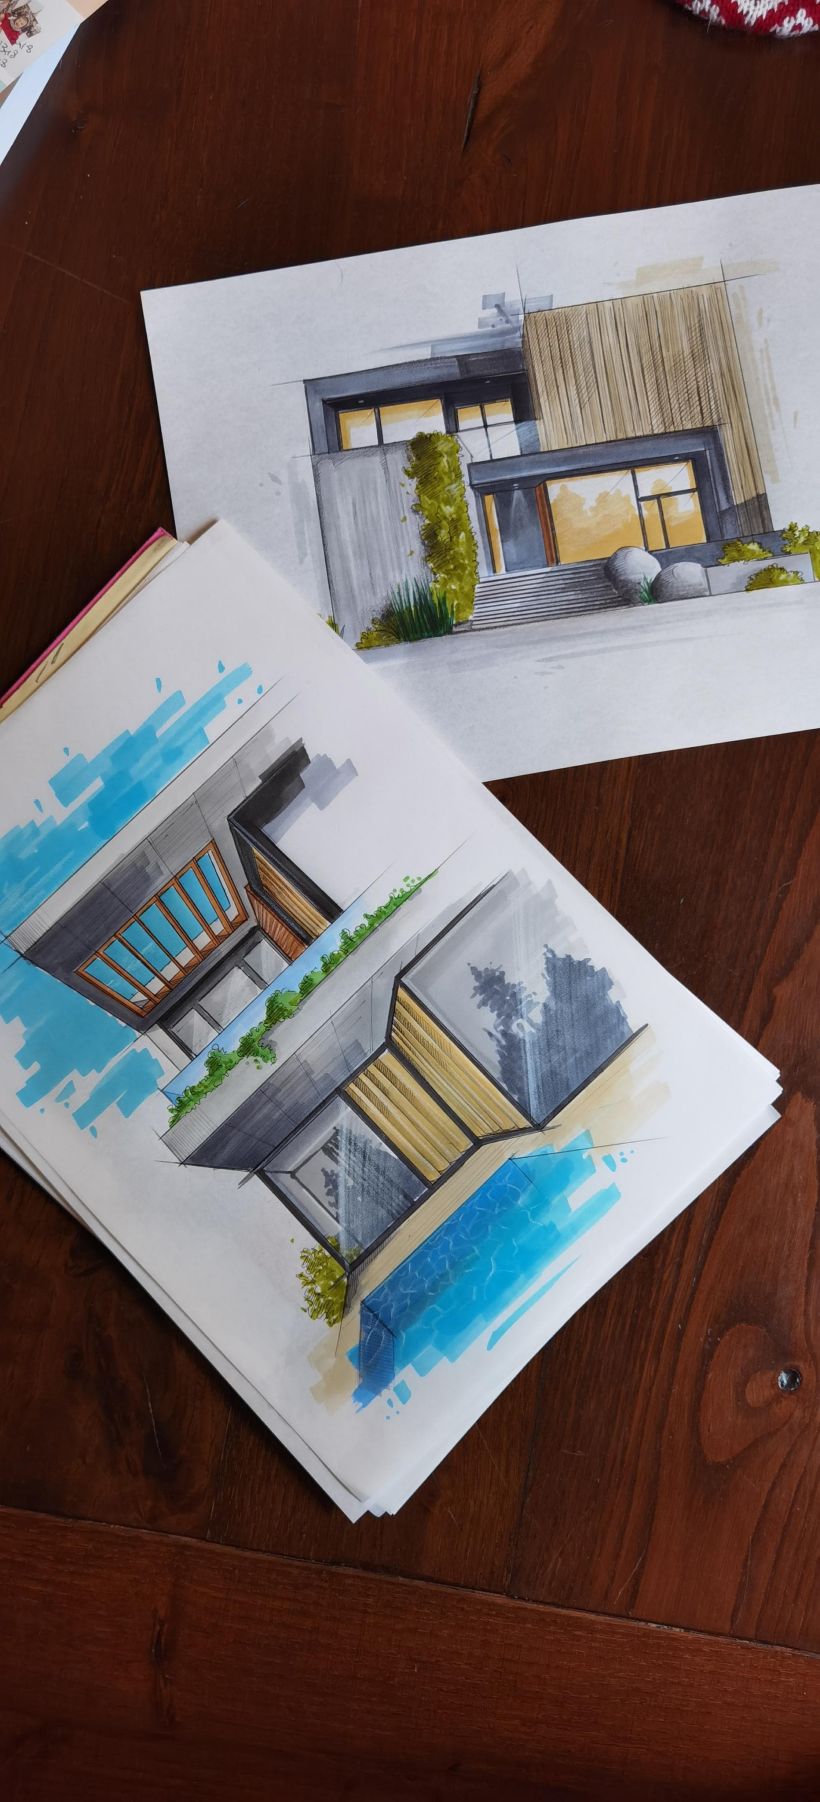 Il mio progetto del corso: Disegno architettonico espressivo con pennarelli colorati 7